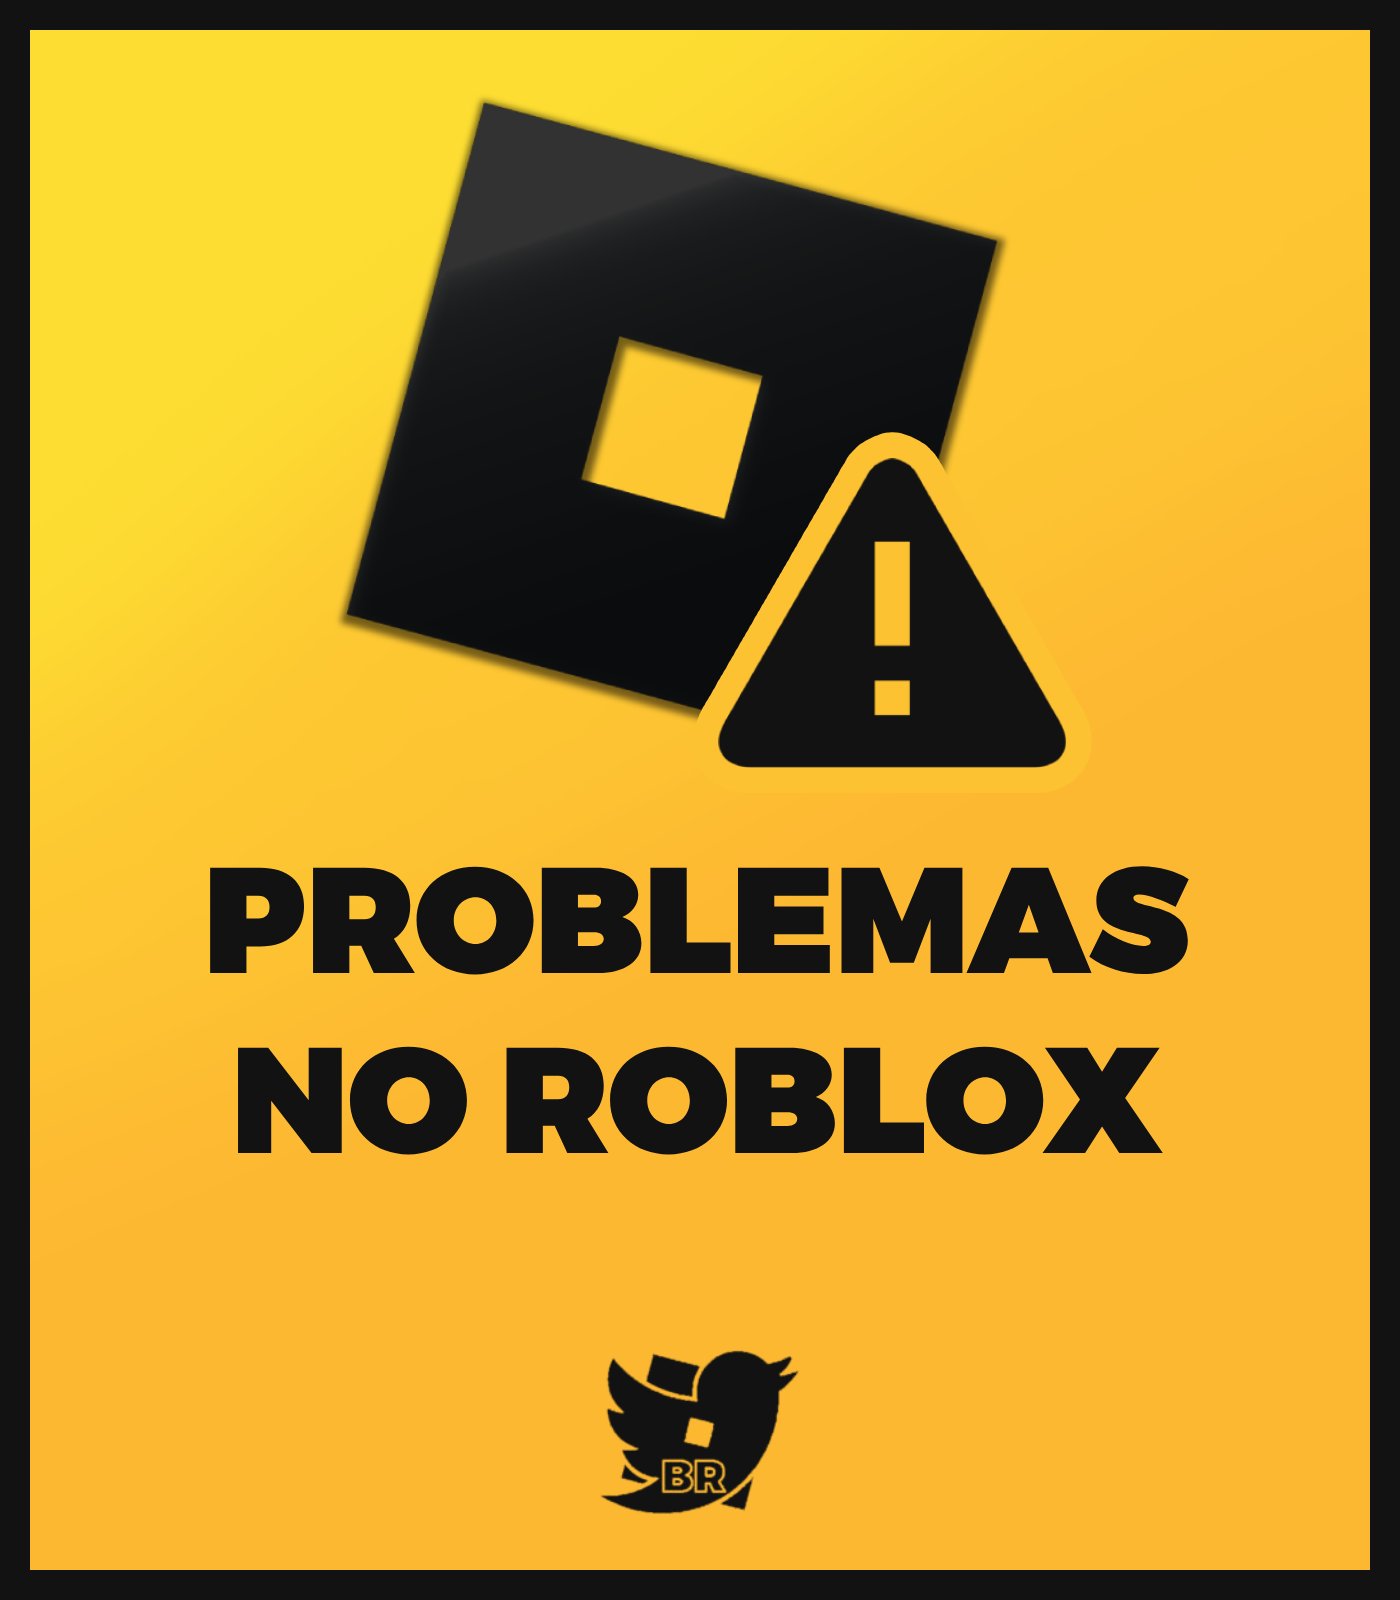 RTC em português  on X: ÚLTIMAS NOTÍCIAS: O Roblox encerrará